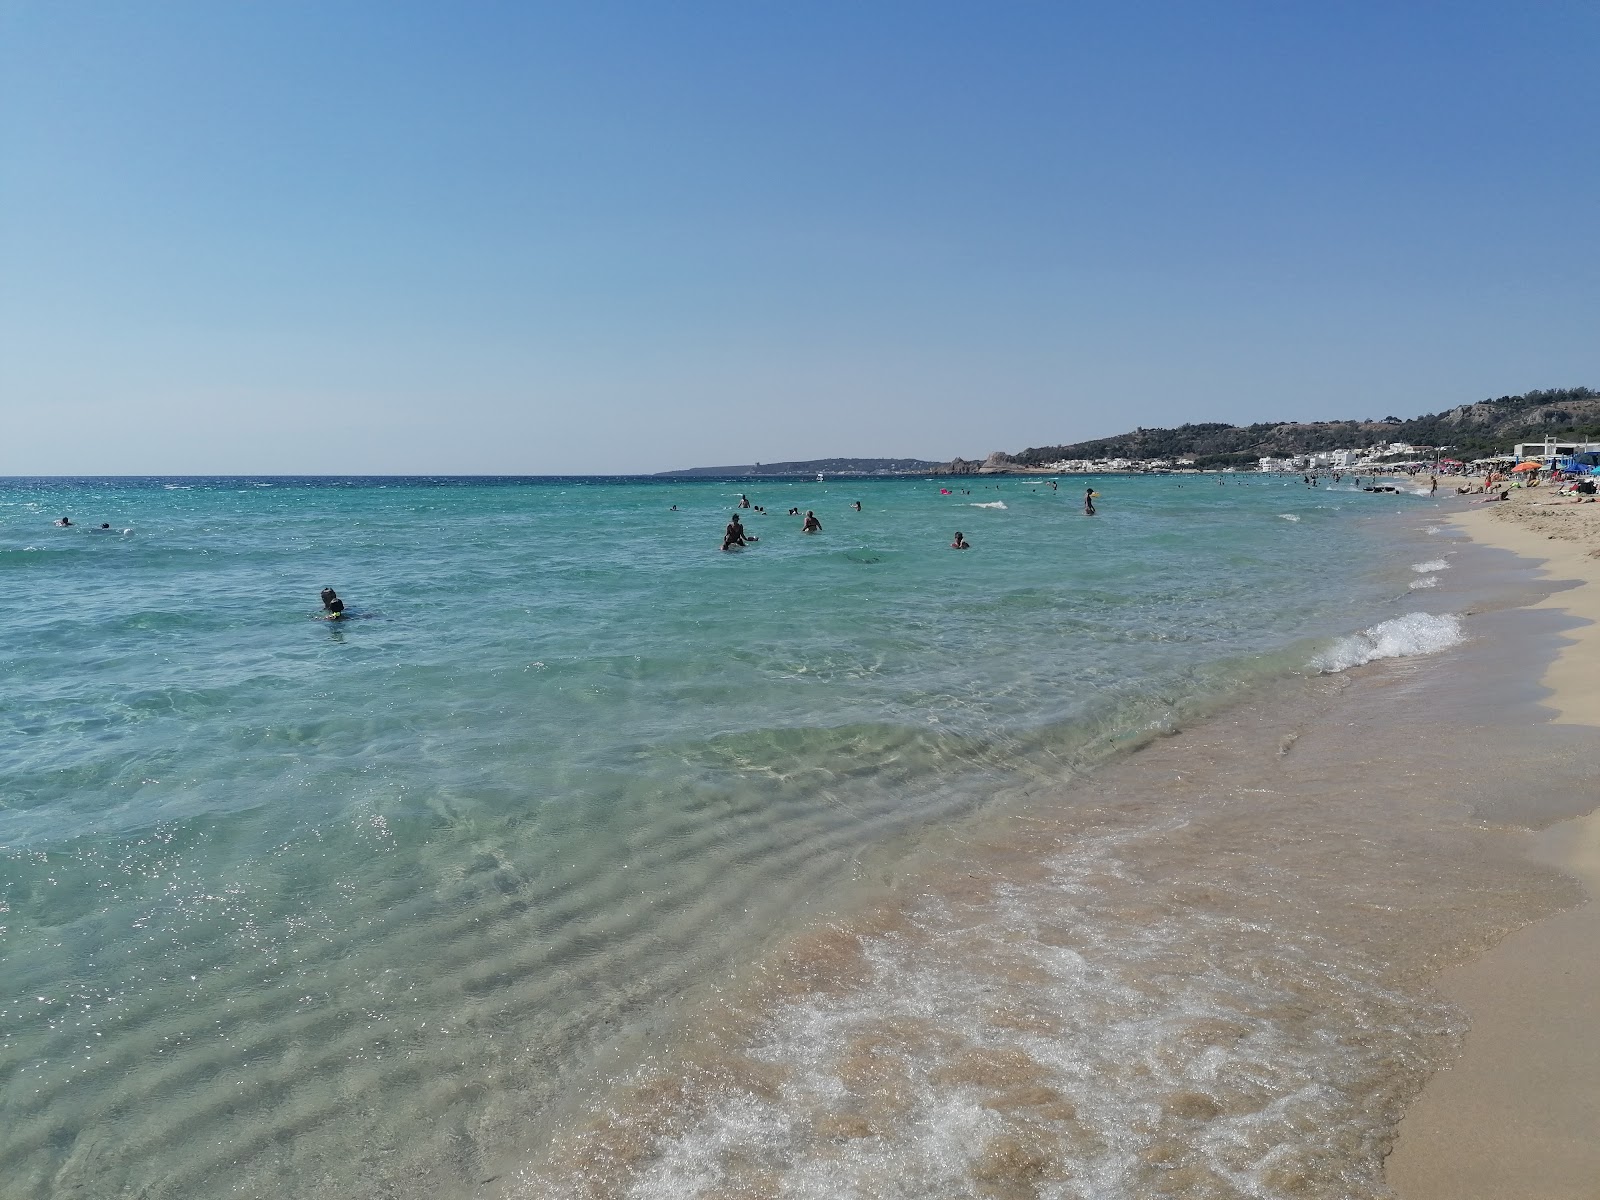 Foto von Spiaggia Padula Bianca befindet sich in natürlicher umgebung